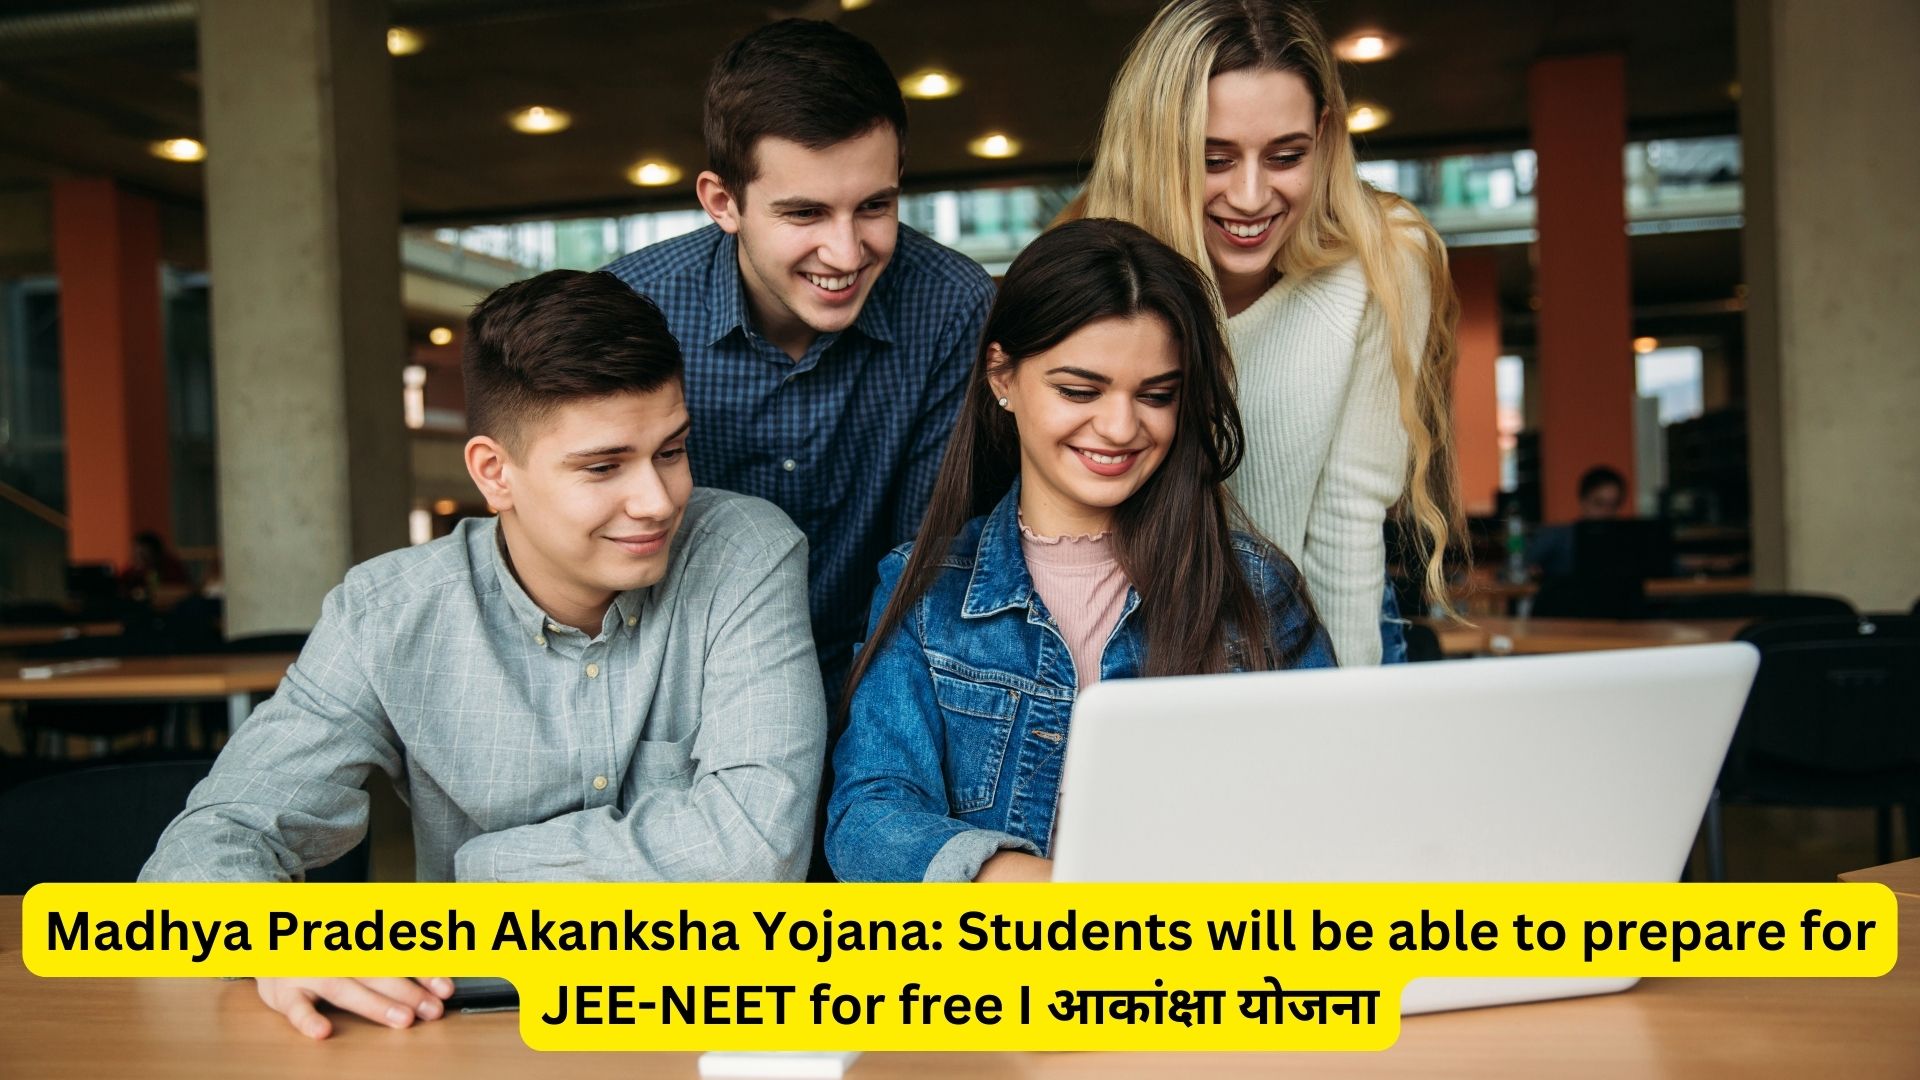 Madhya Pradesh Akanksha Yojana: Students will be able to prepare for JEE-NEET for free I आकांक्षा योजना